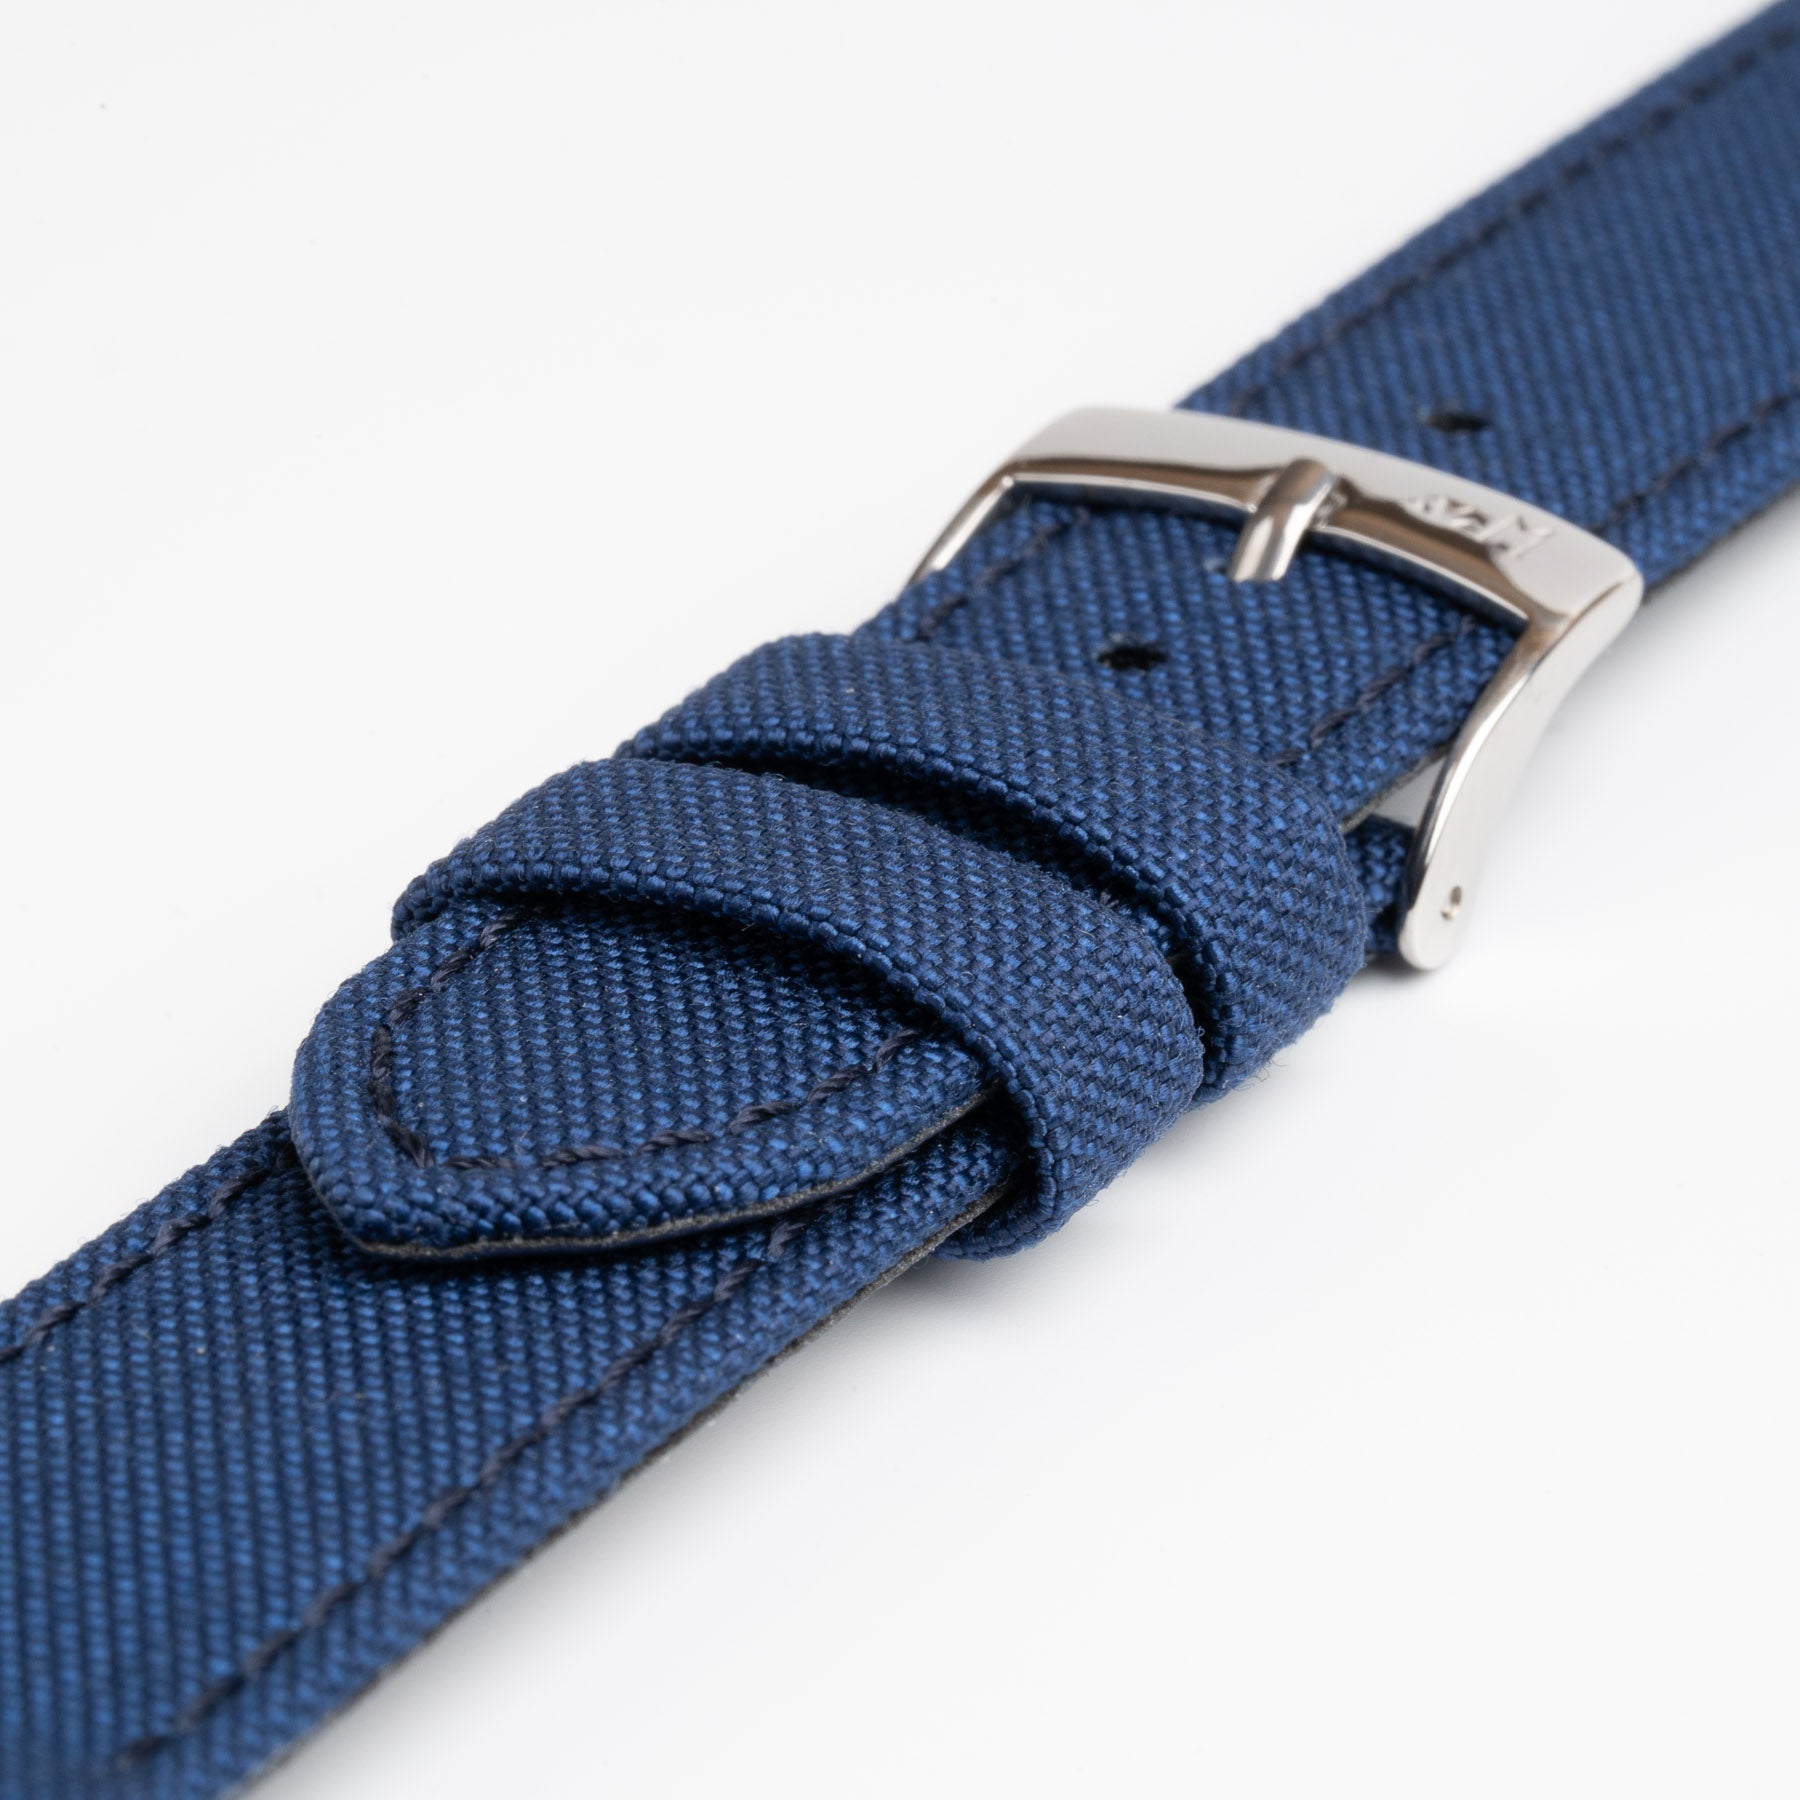 Cordura Blue Watch Strap